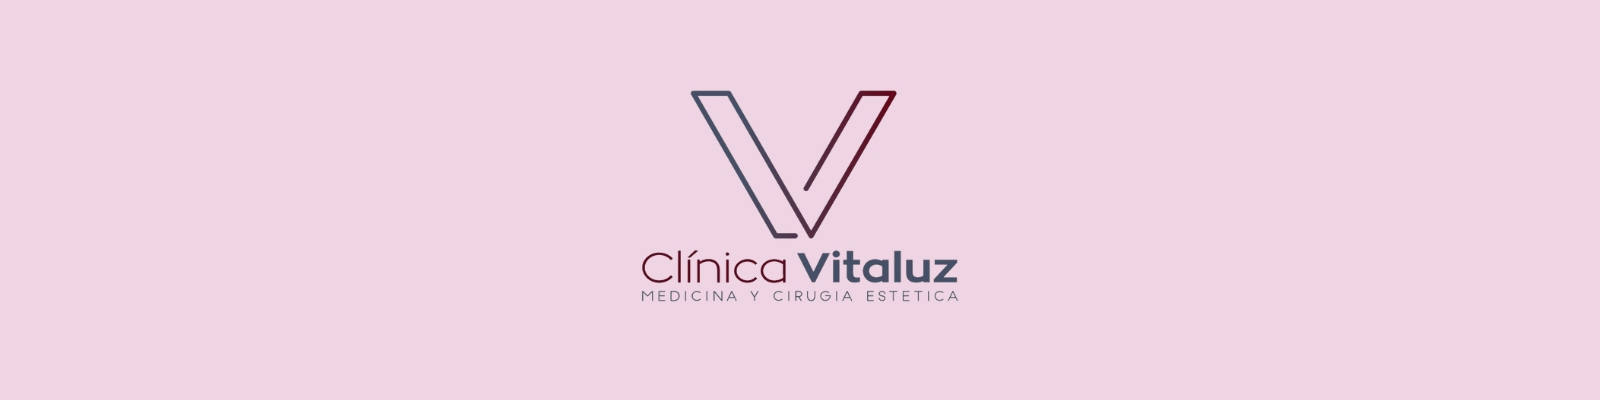 CLINICA VITALUZ PROMO COYSALUD WEB SLIDE